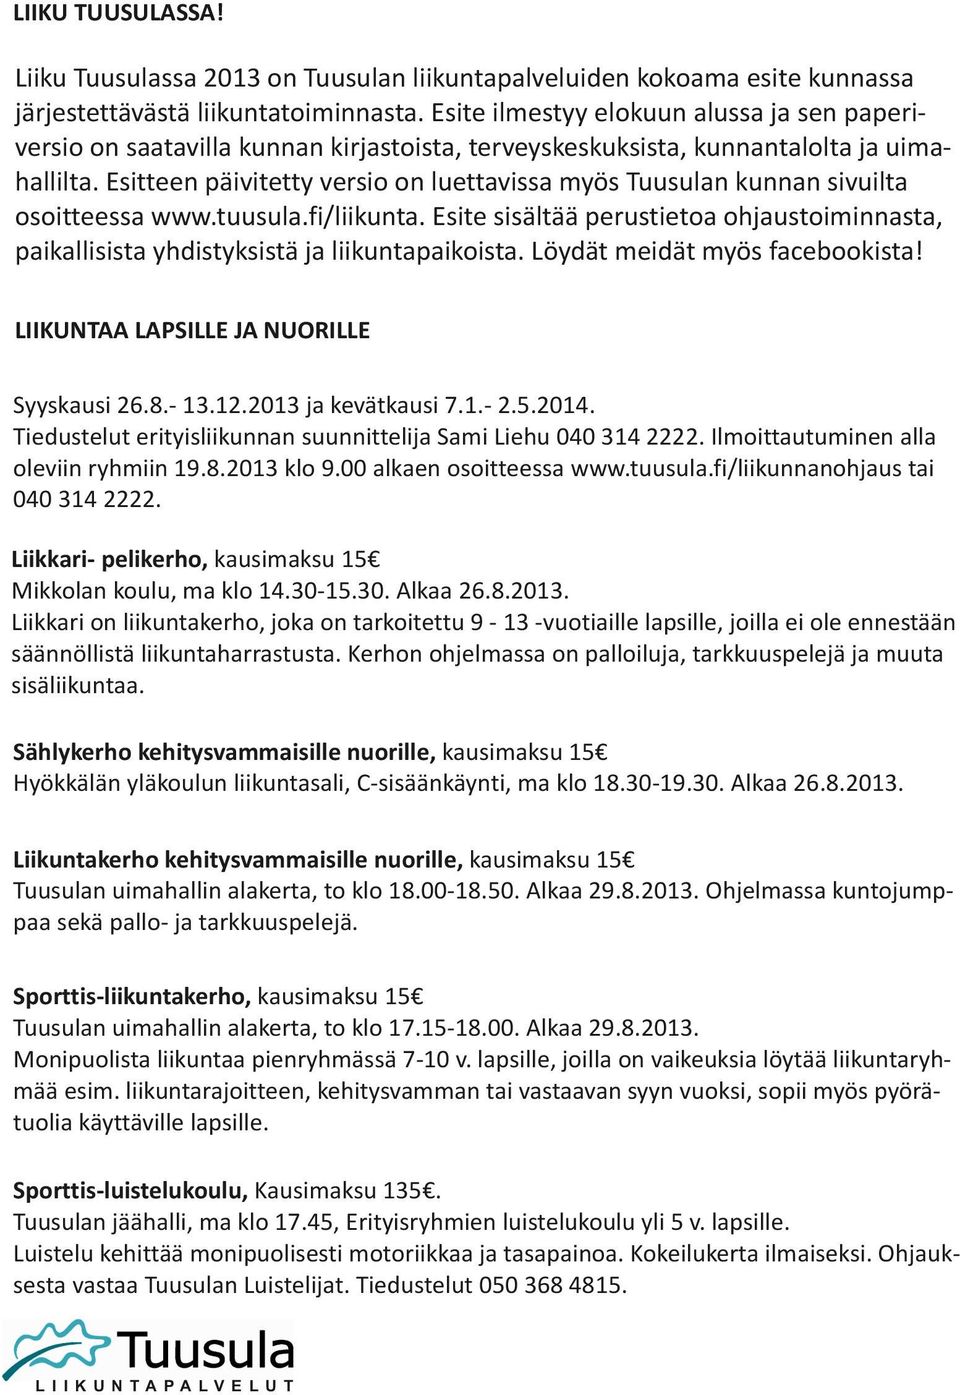 Esitteen päivitetty versio on luettavissa myös Tuusulan kunnan sivuilta osoitteessa www.tuusula.fi/liikunta.